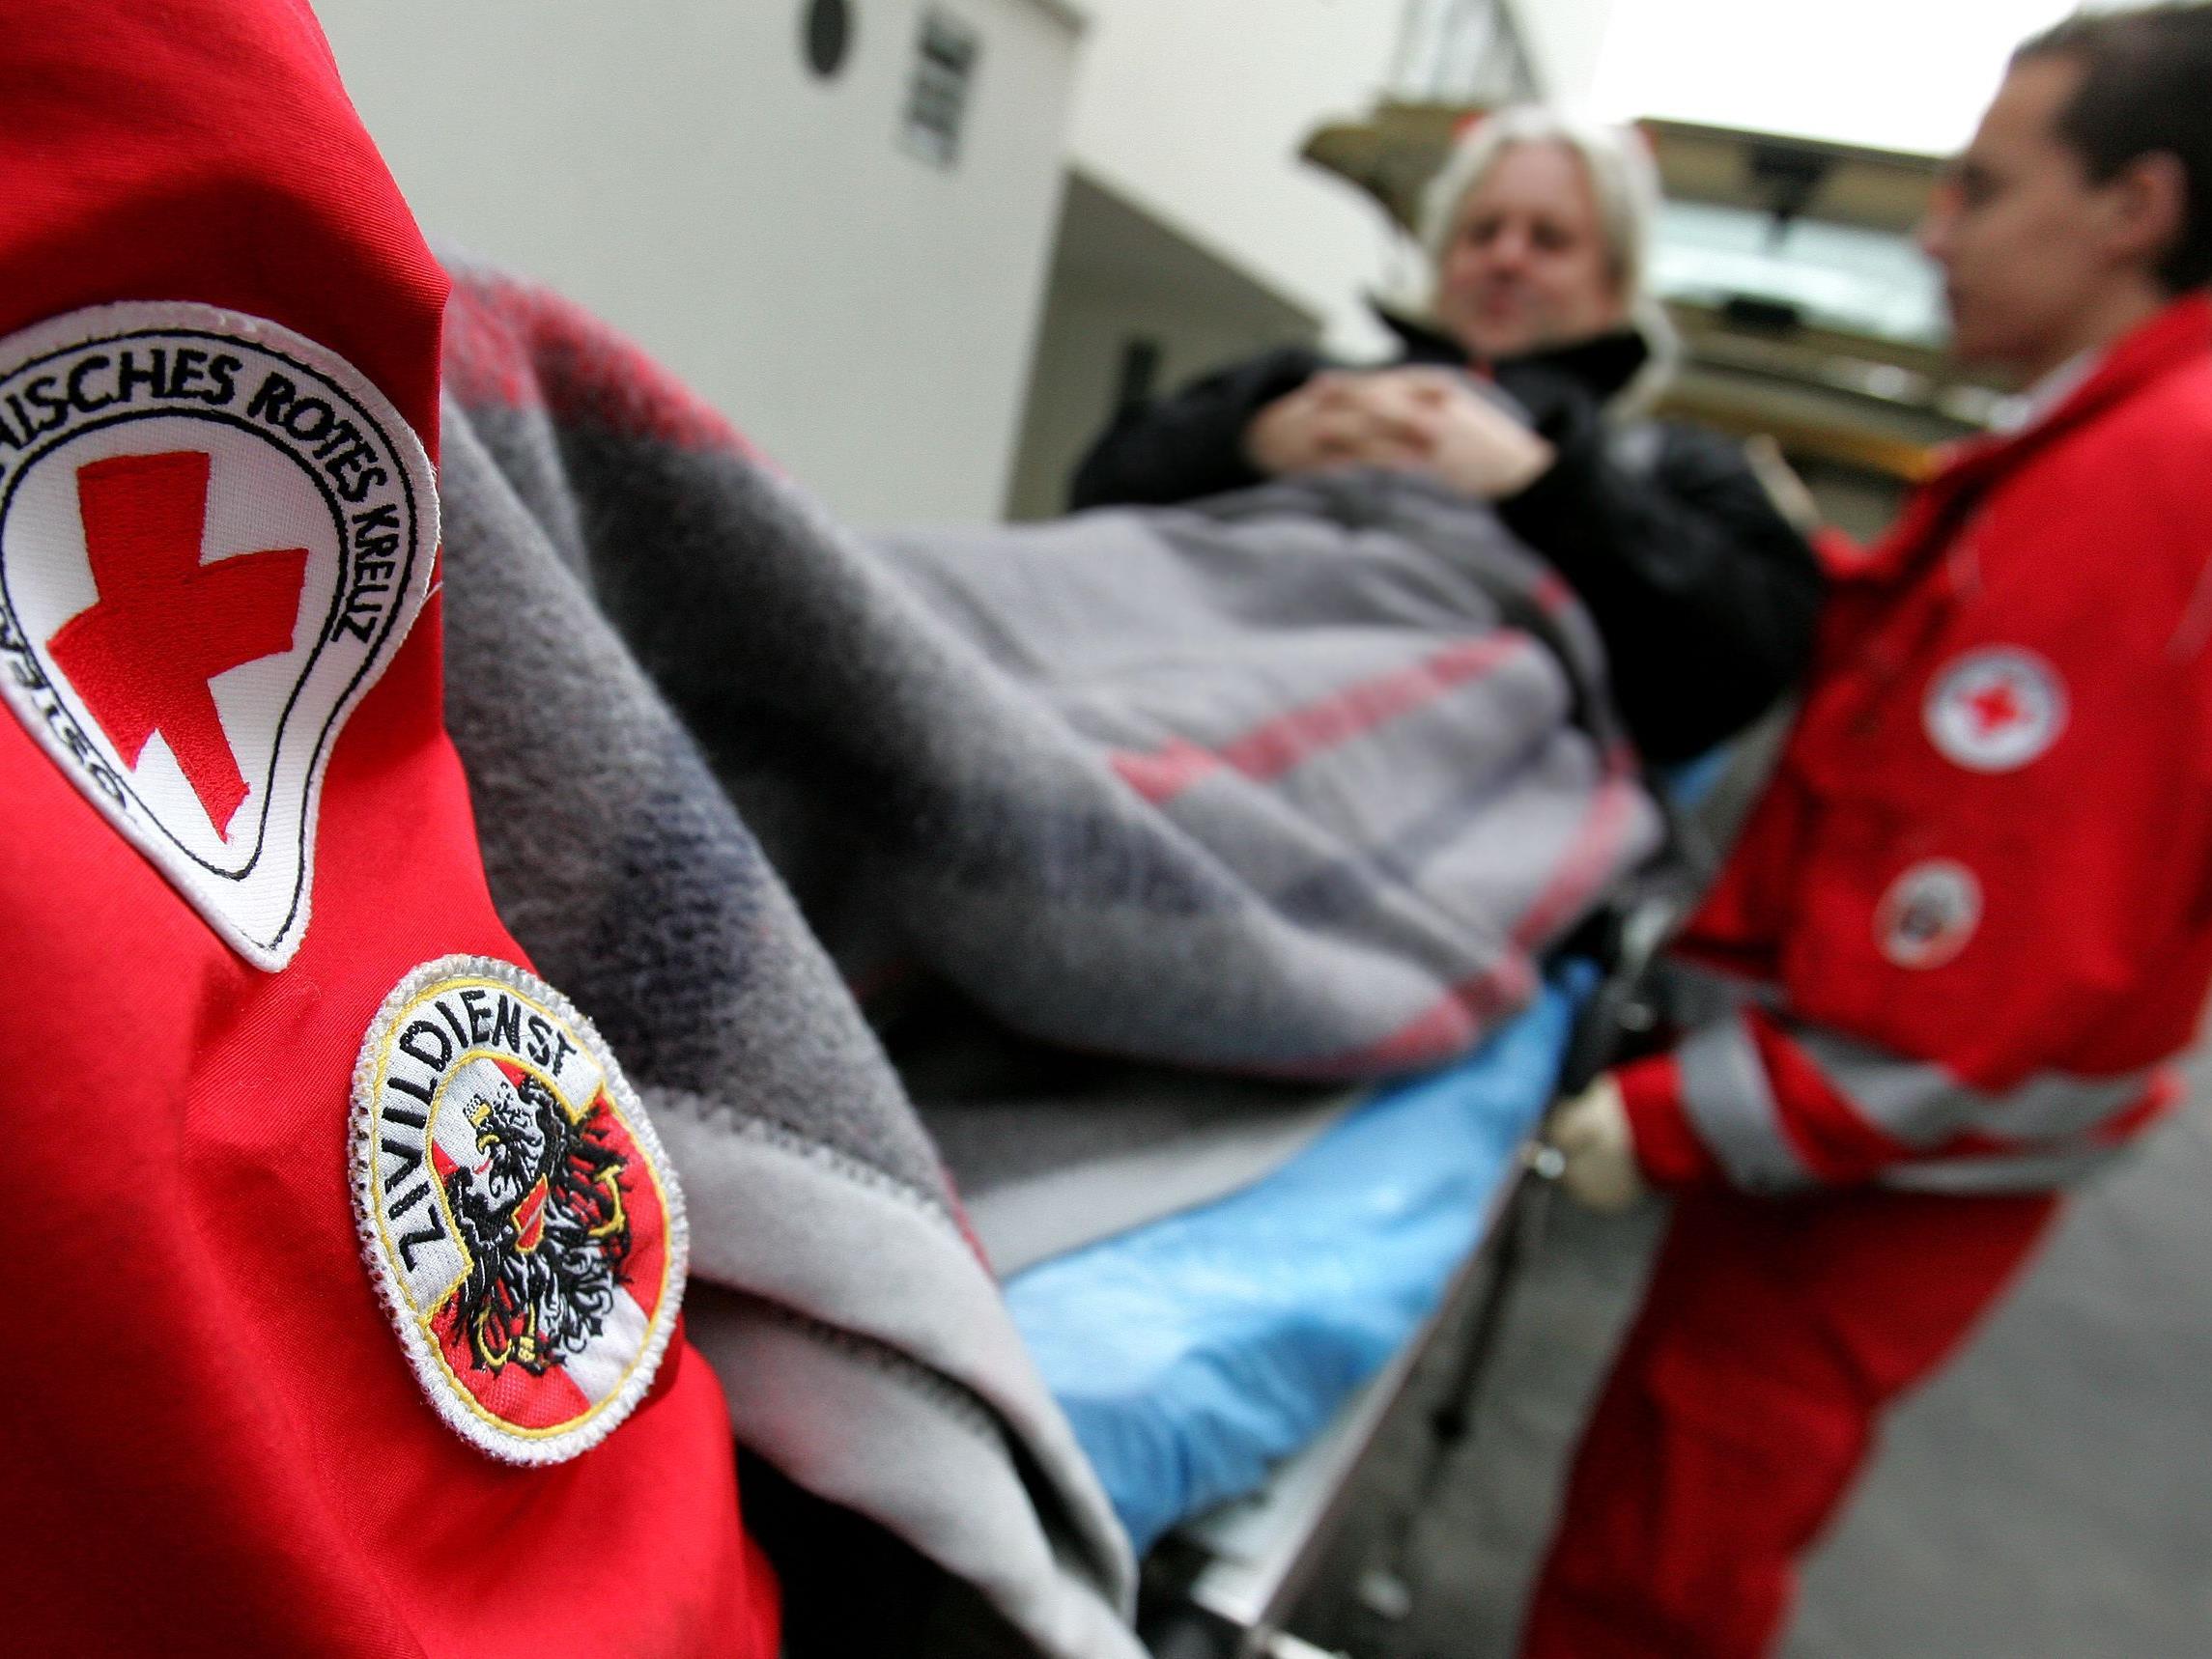 Rotes Kreuz Vorarlberg versorgte vergangenes Jahr rund 100.000 Patienten.